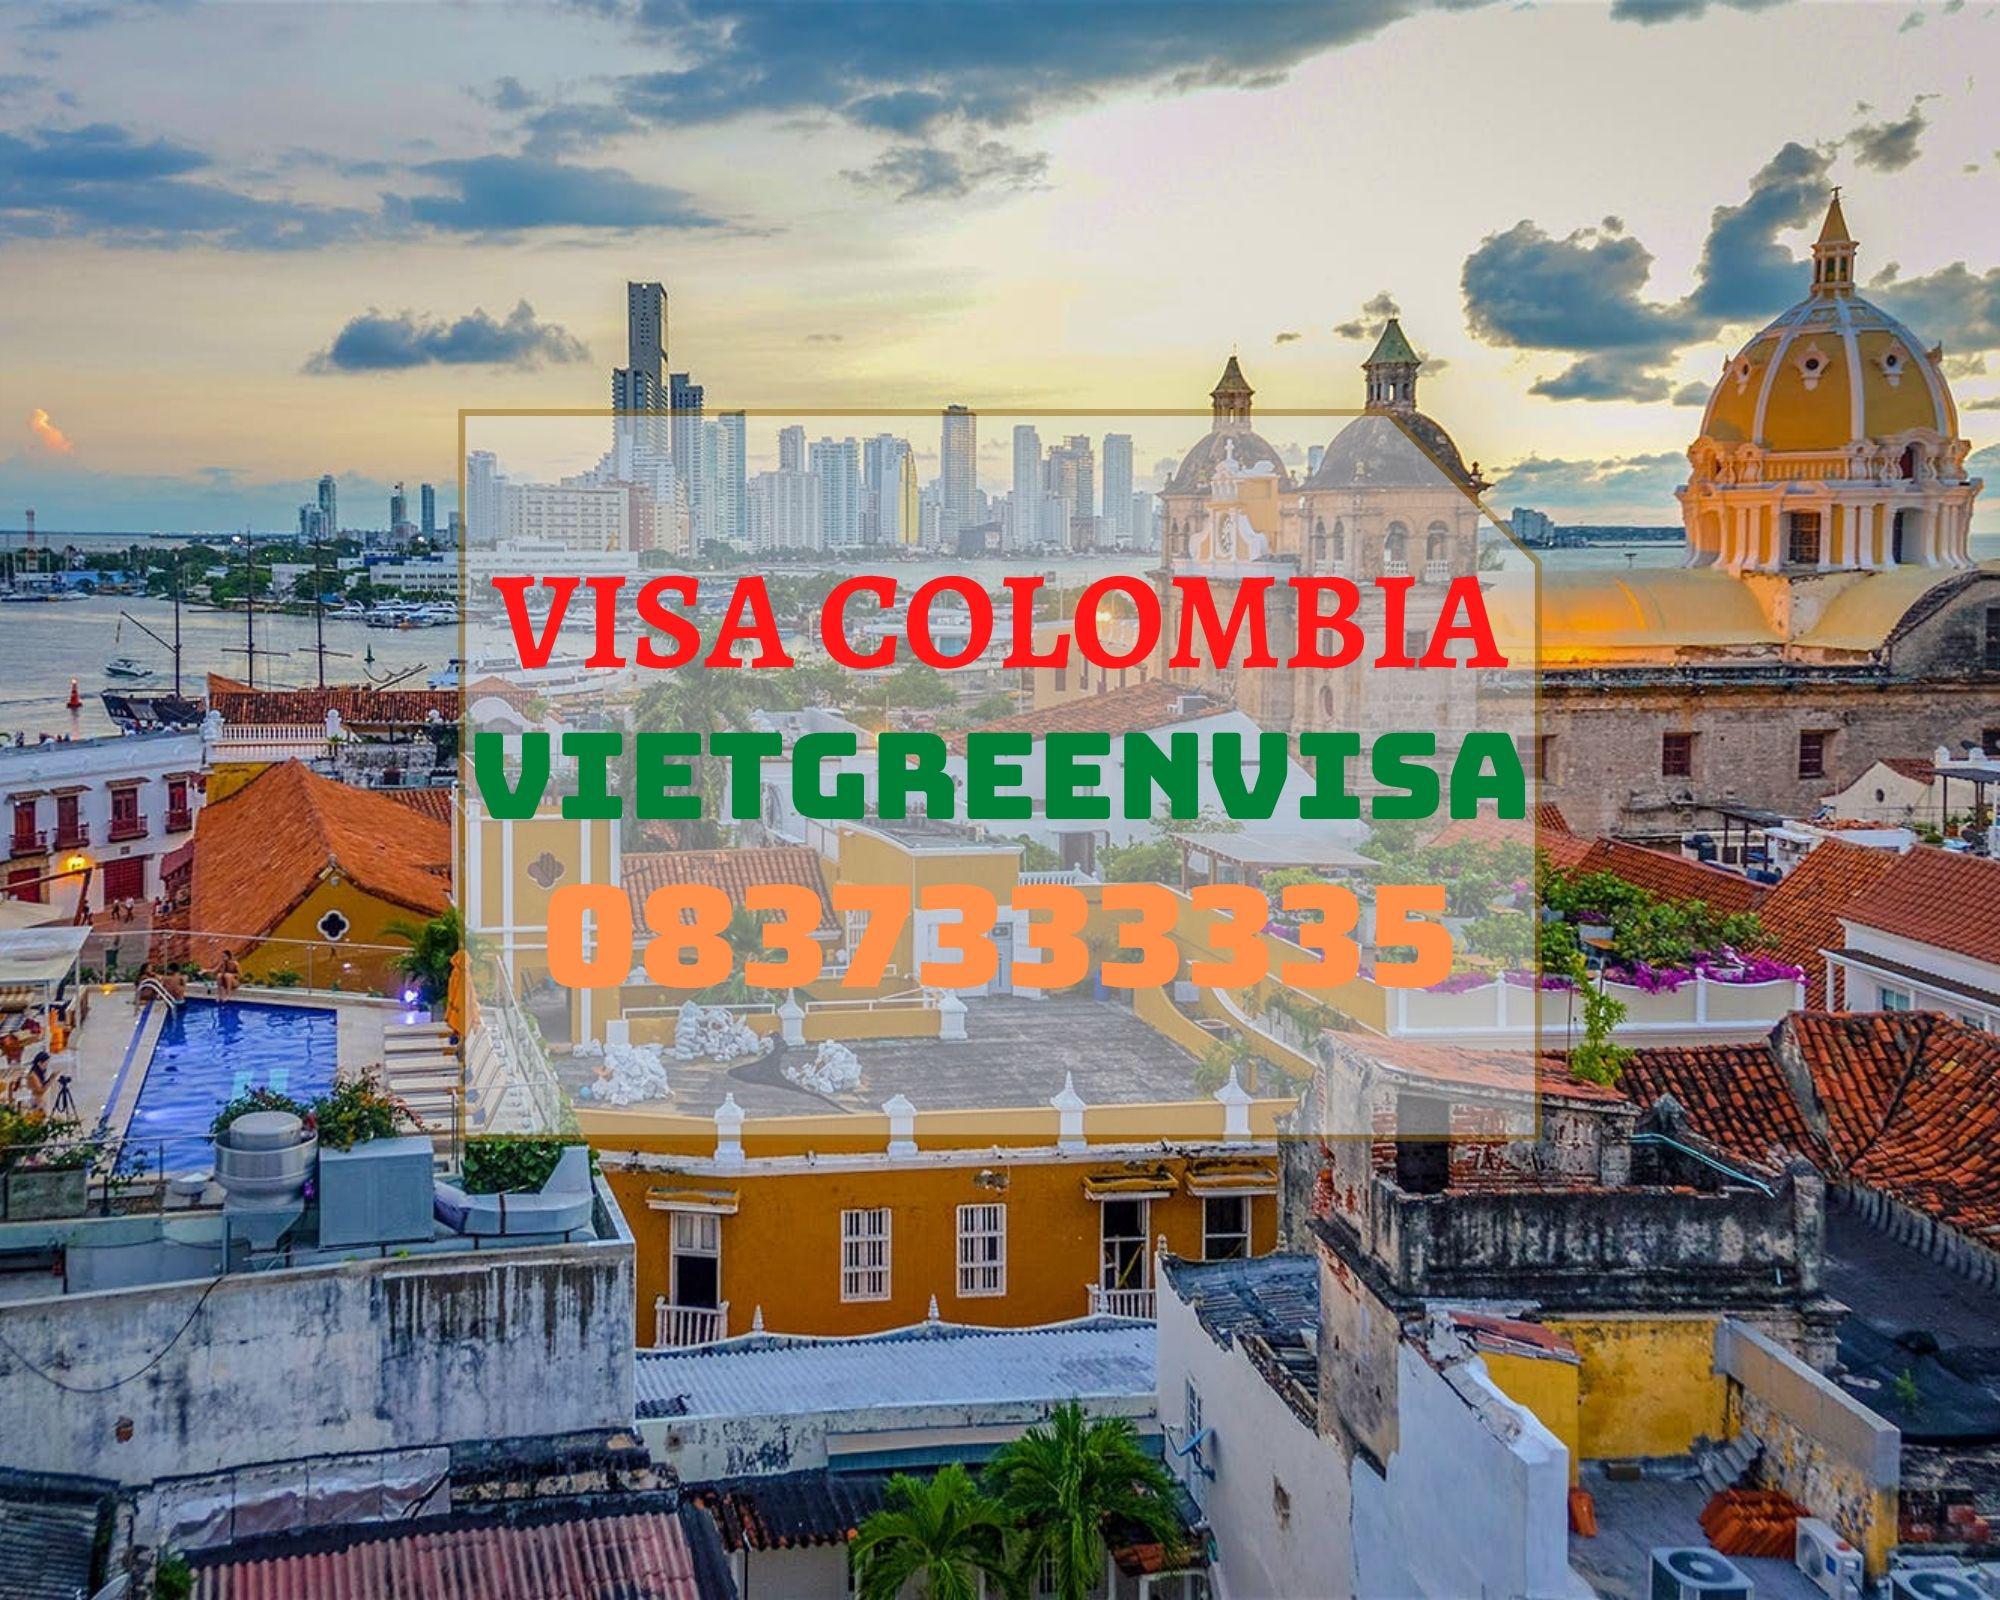 Cẩm nang xin visa Colombia nhanh chóng